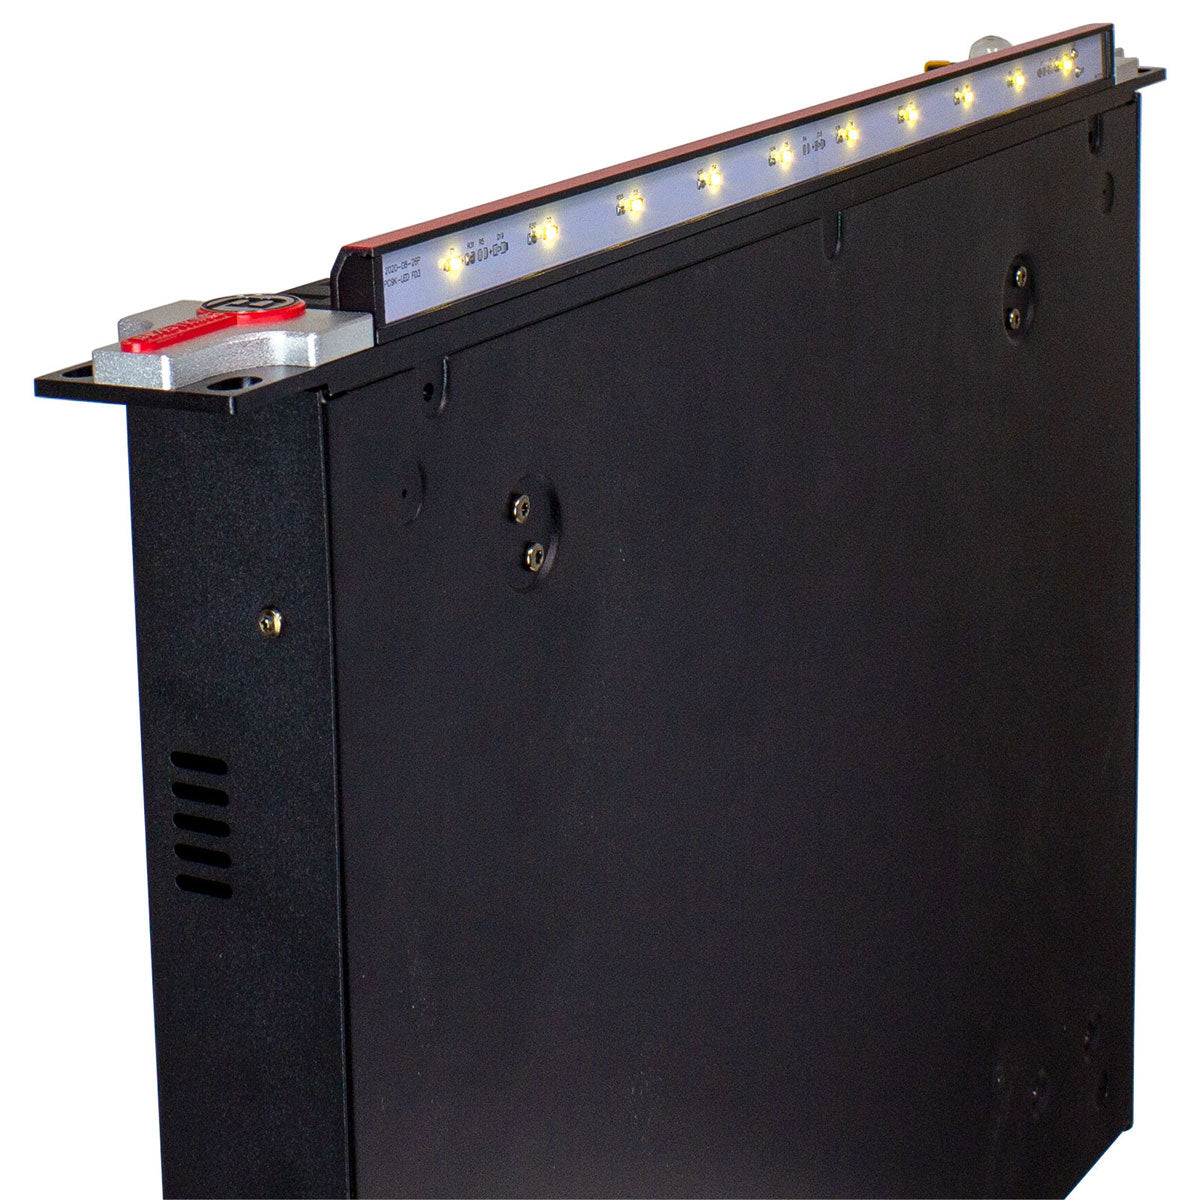 Blastking PC904-AV 15 Amp Power Conditioner